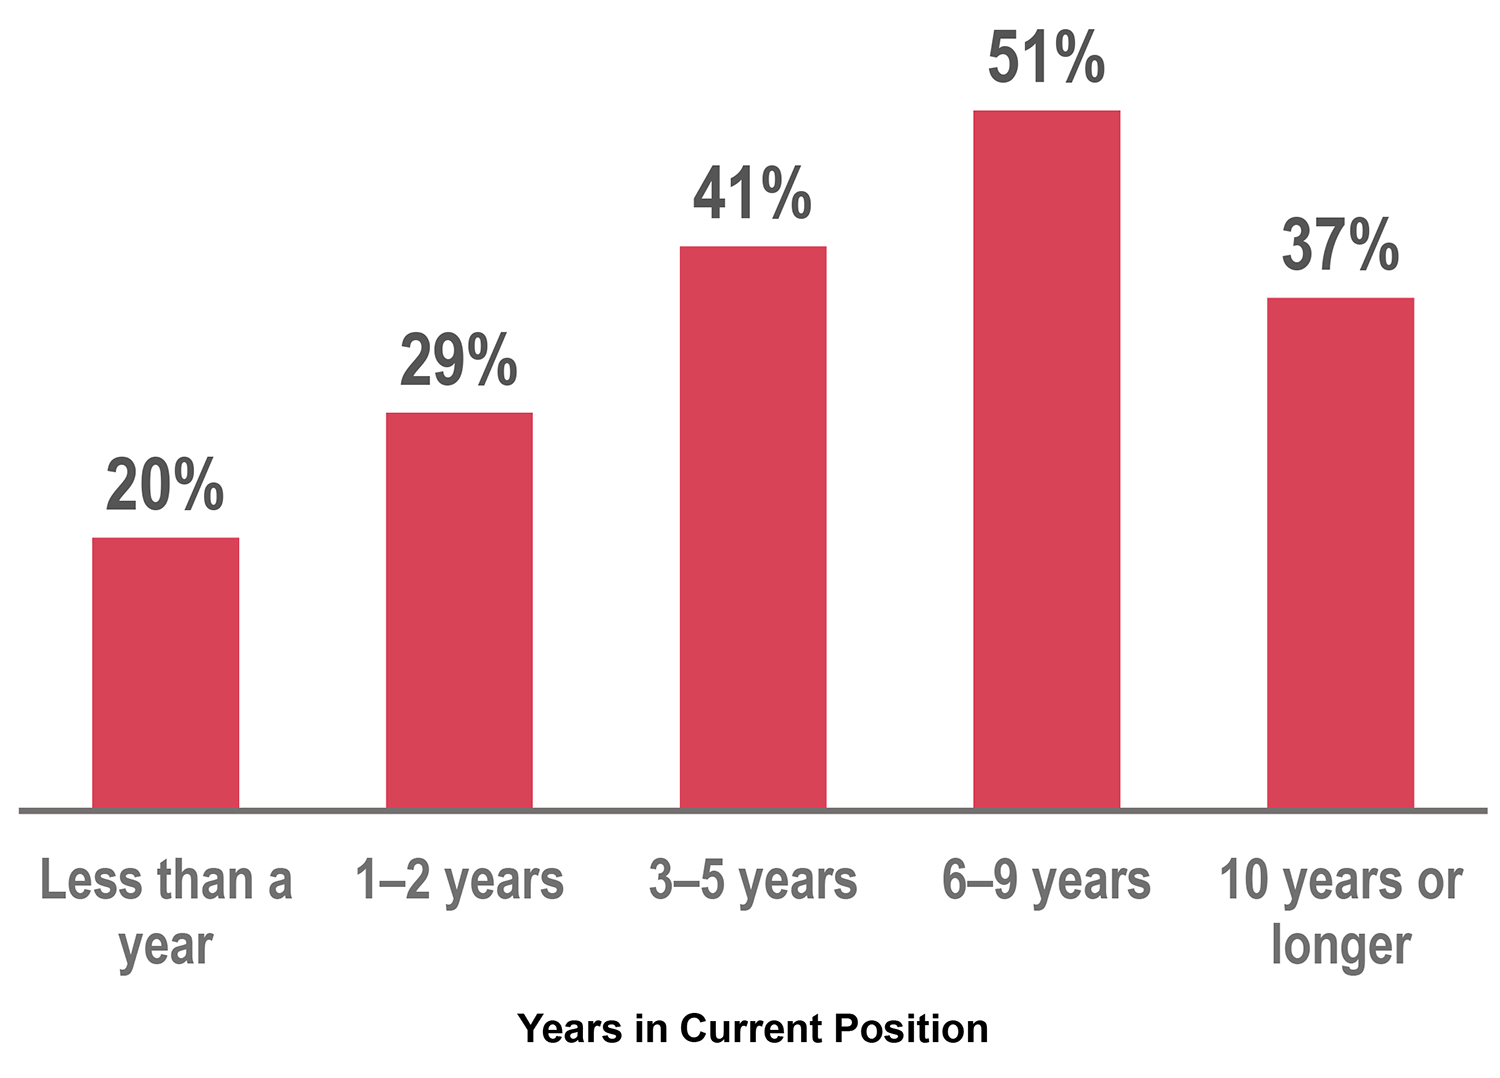 柱状图显示当前位置的年份。一年以内20%;1-2年29%;3-5年41%;6-9岁51%;10年及以上37%。